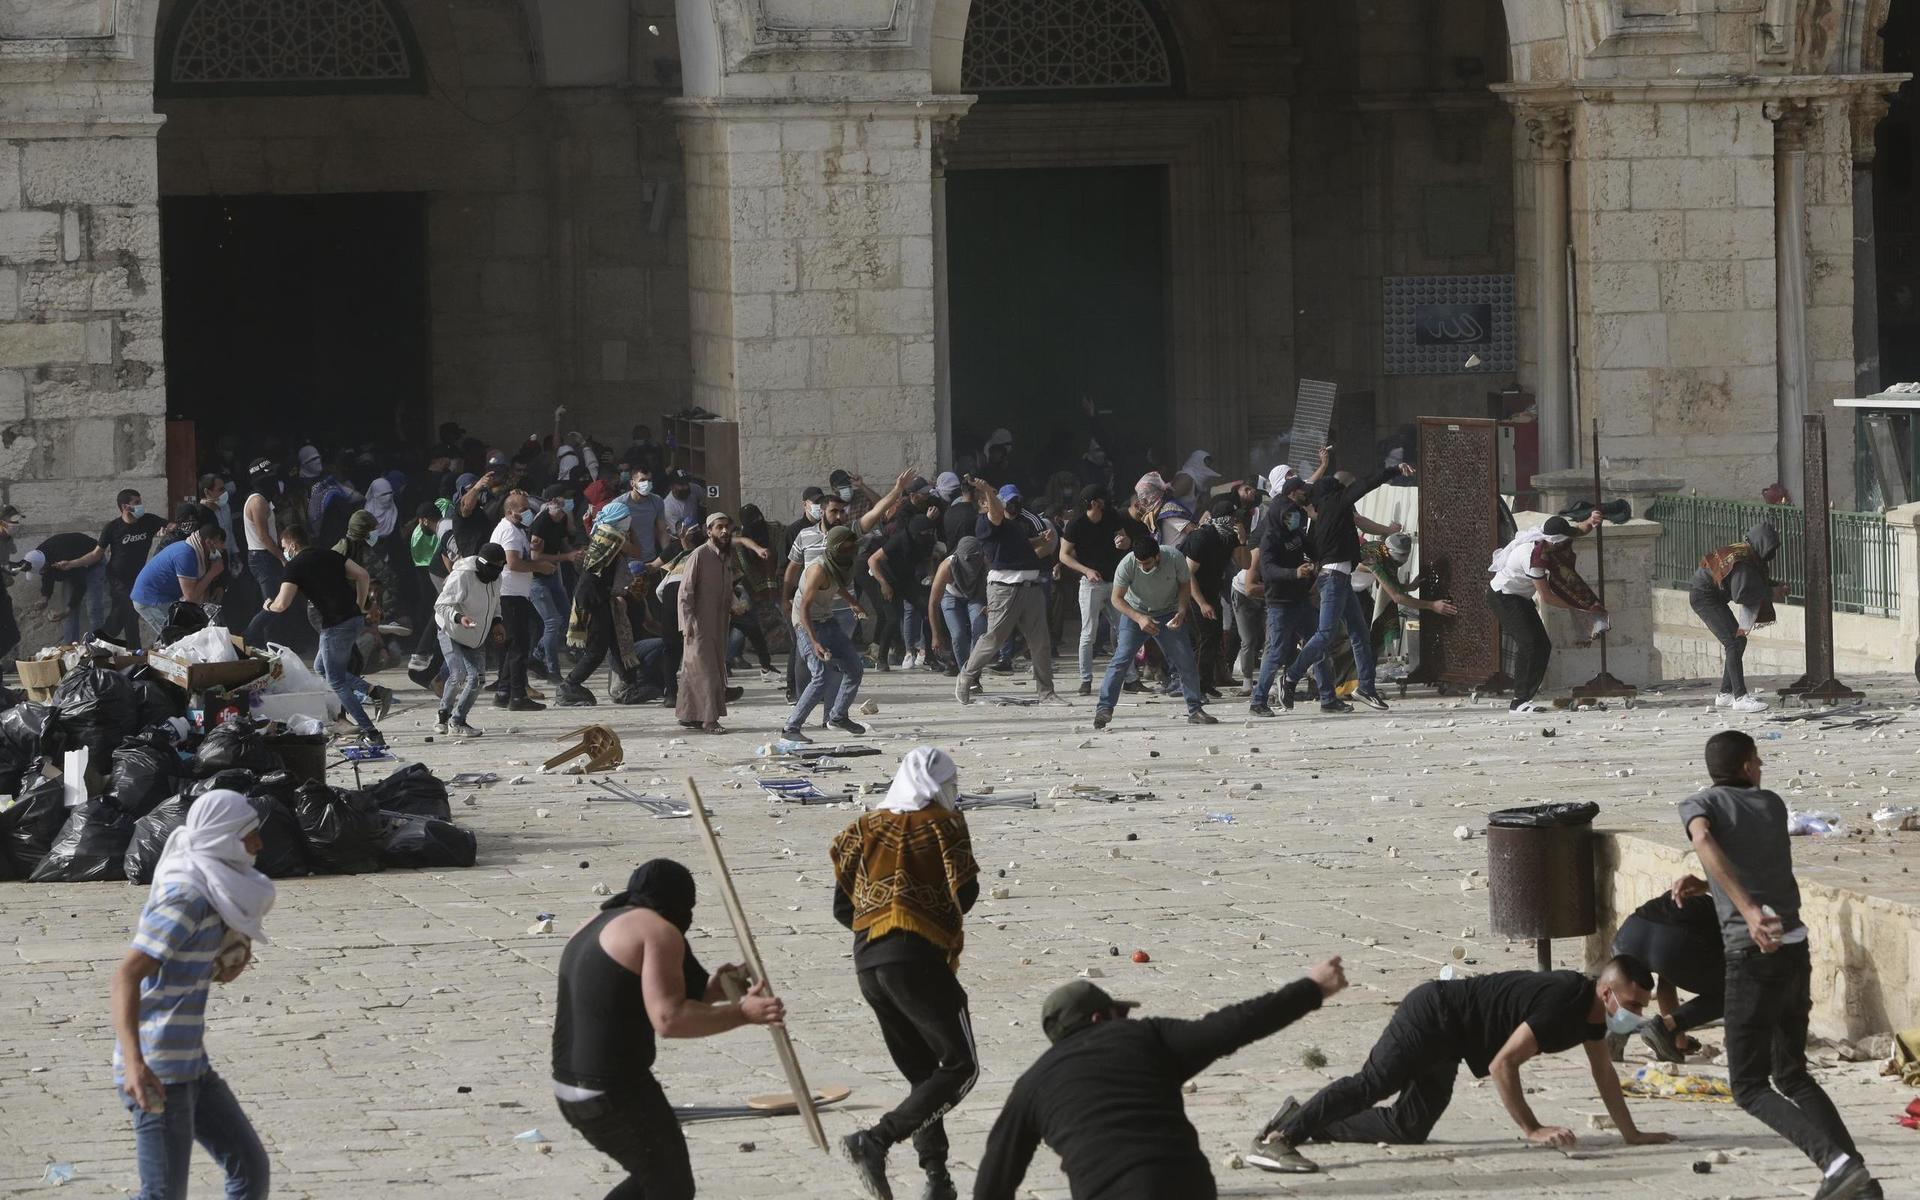 Nyhetssajten Ynet och andra israeliska medier rapporterar att polis använt chockgranater och vattenkanoner, medan demonstranter kastat stenar och flaskor, när våldsamheterna fortsatt över natten.